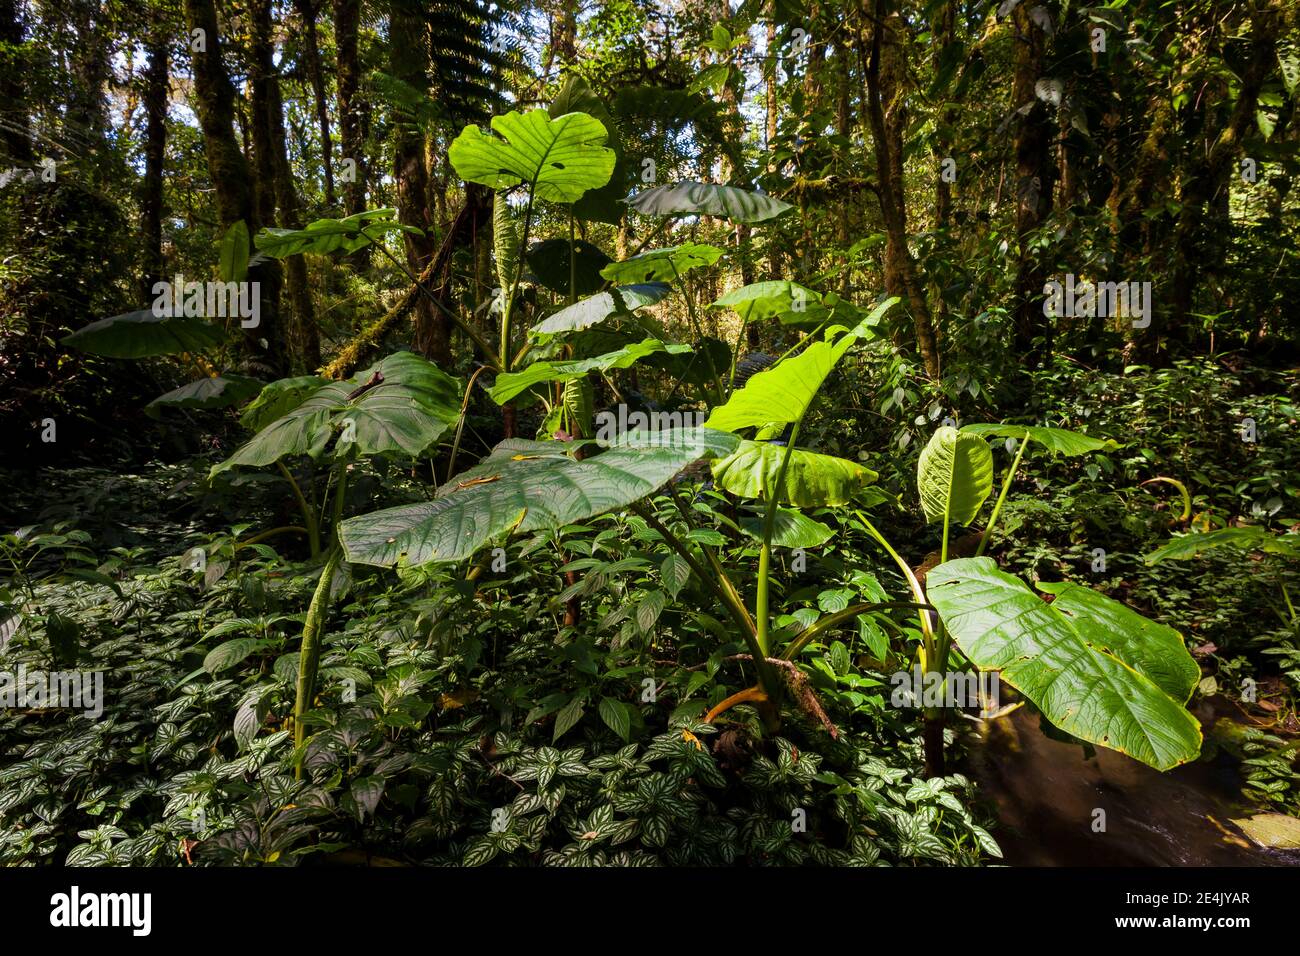 Forêt tropicale luxuriante dans le parc national de la Amistad, province de Chiriqui, République du Panama. Banque D'Images